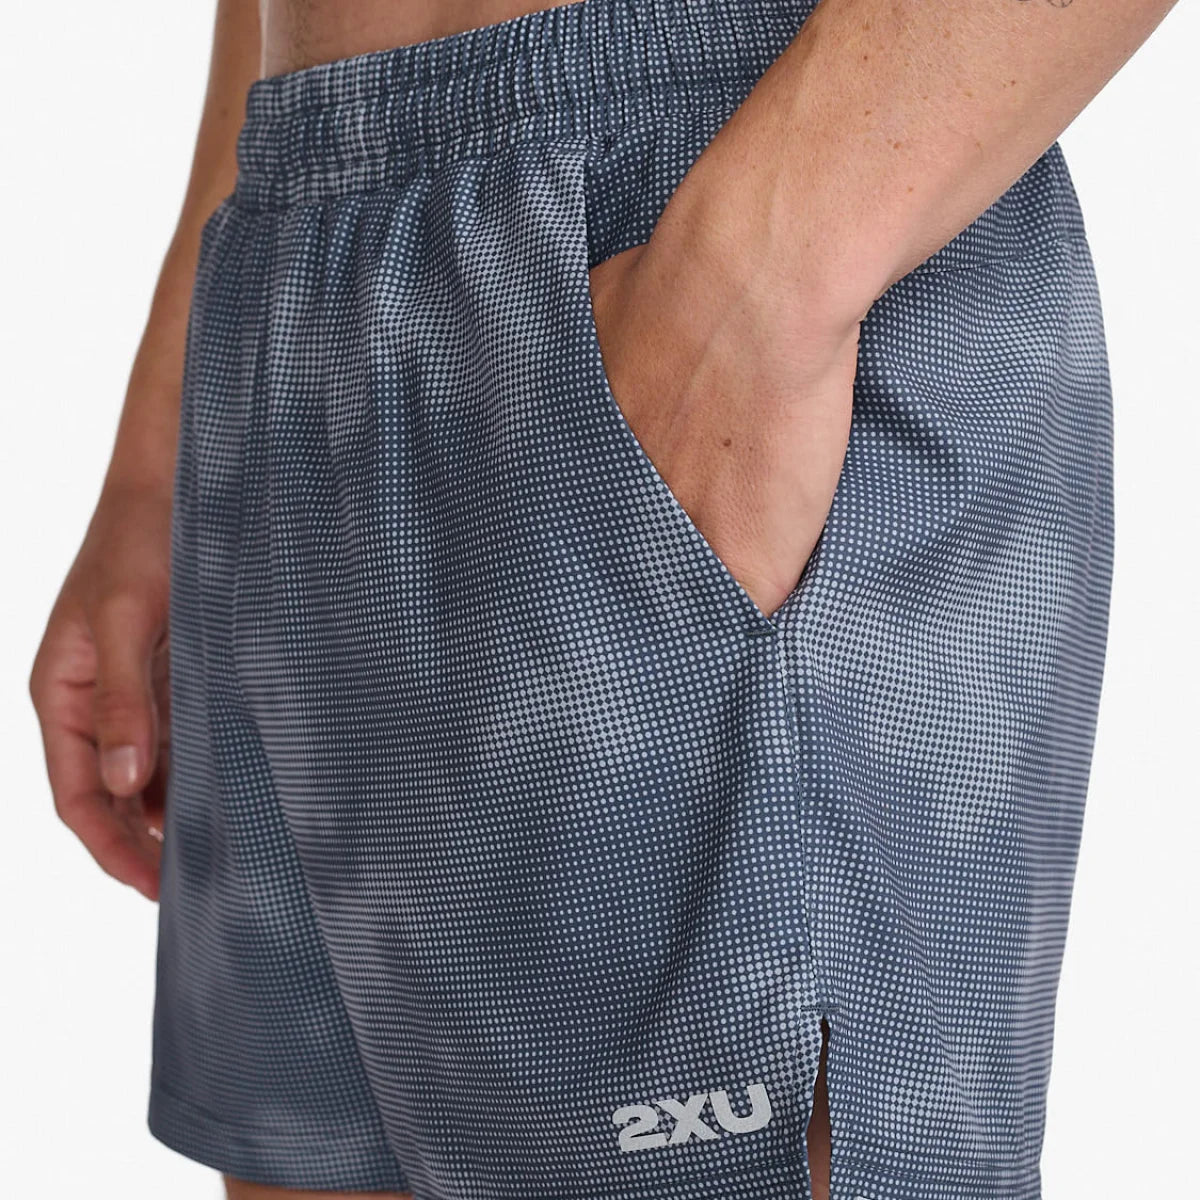 Men's 2XU Aero 5" Shorts